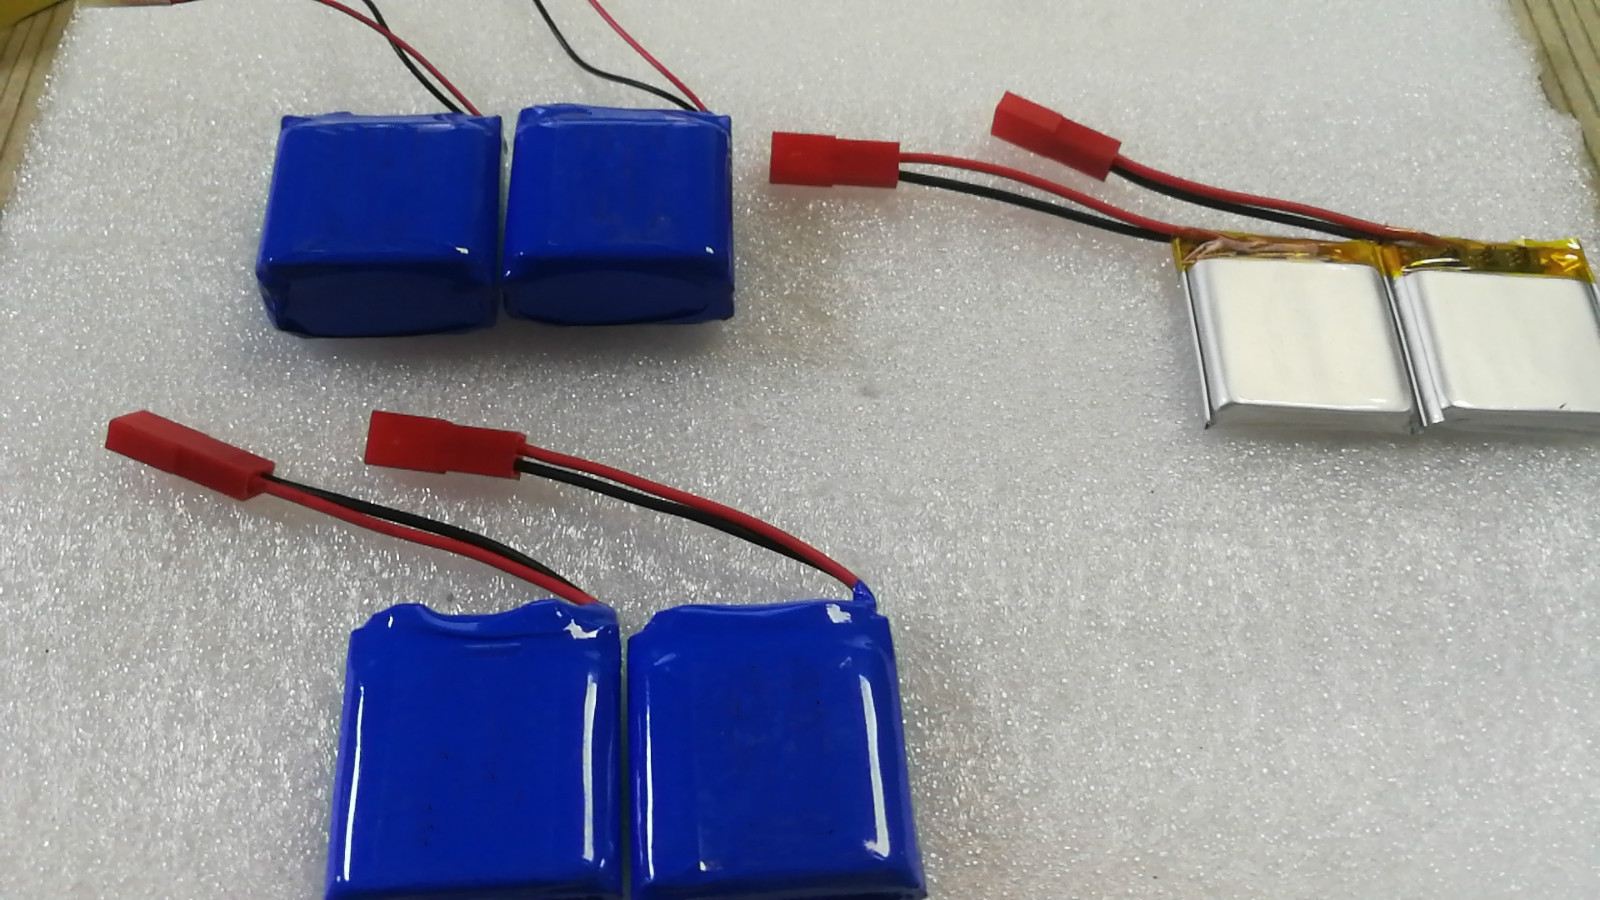 聚合物锂电池组802540 3.7V两并 定位器GPS按摩器 训狗器车灯电池